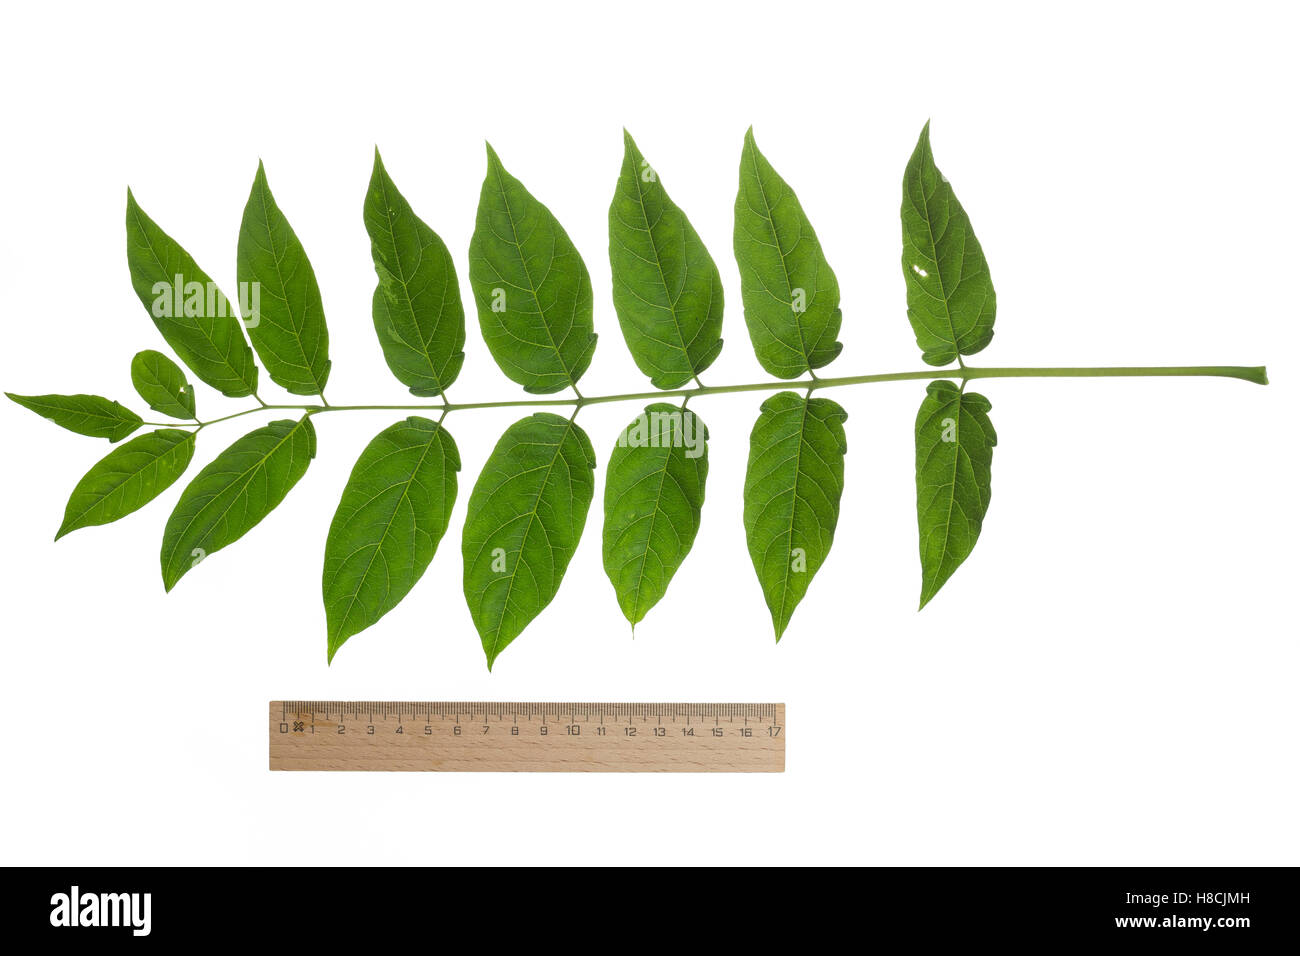 Götterbaum, Chinesischer Götterbaum, Ailanthus altissima, Ailanthus glandulosa, arbre du paradis, ailanthus, chouchun, l'Ailante g Banque D'Images